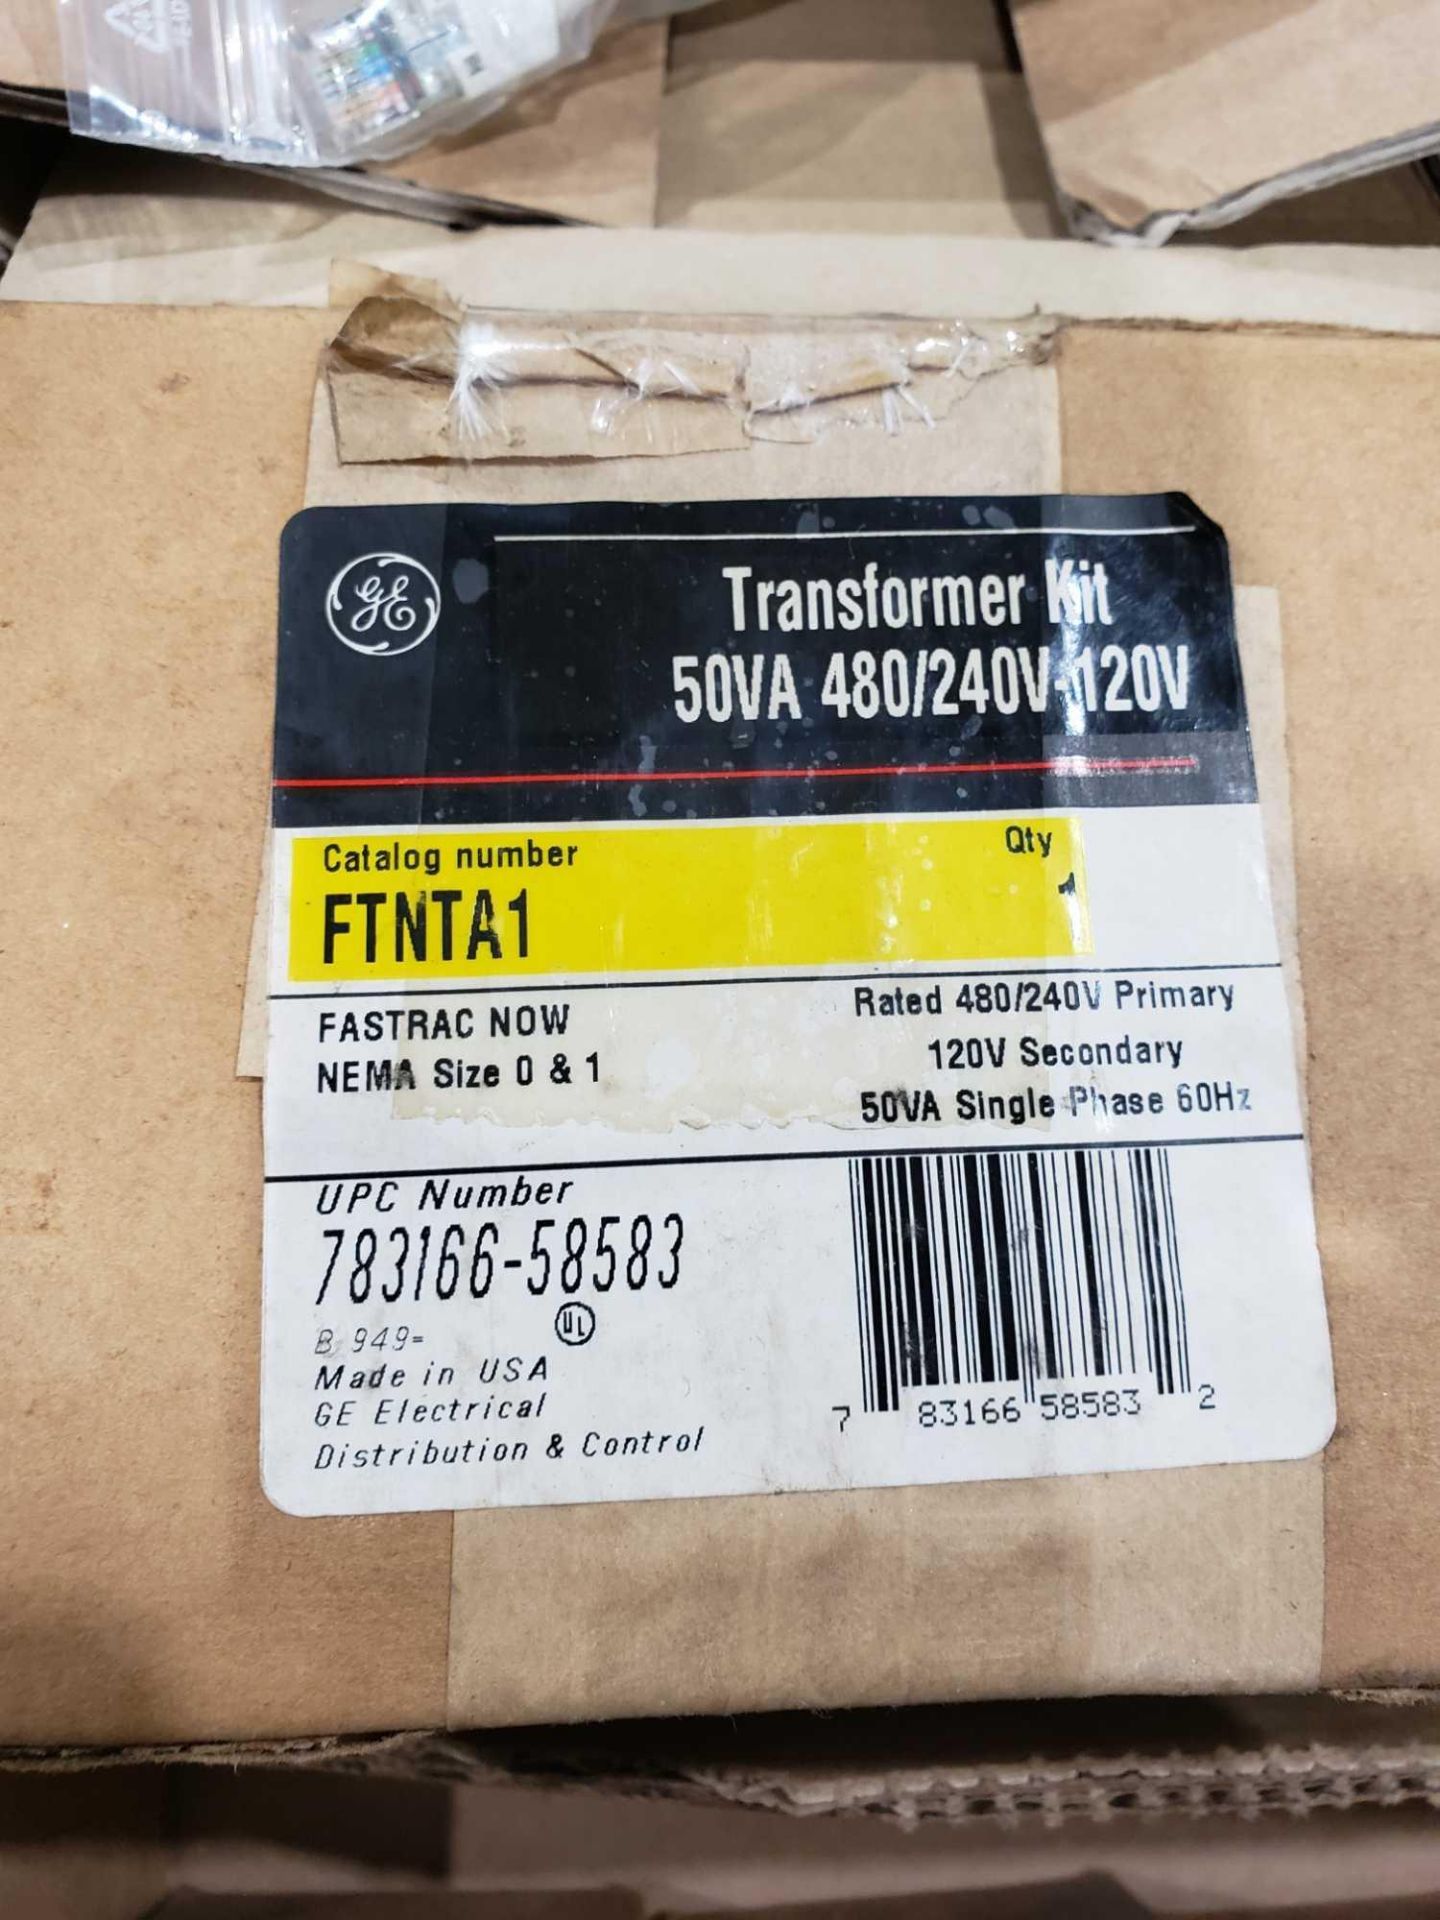 GE catalog FTNTA1 tranformer kit. New in box. - Image 2 of 2